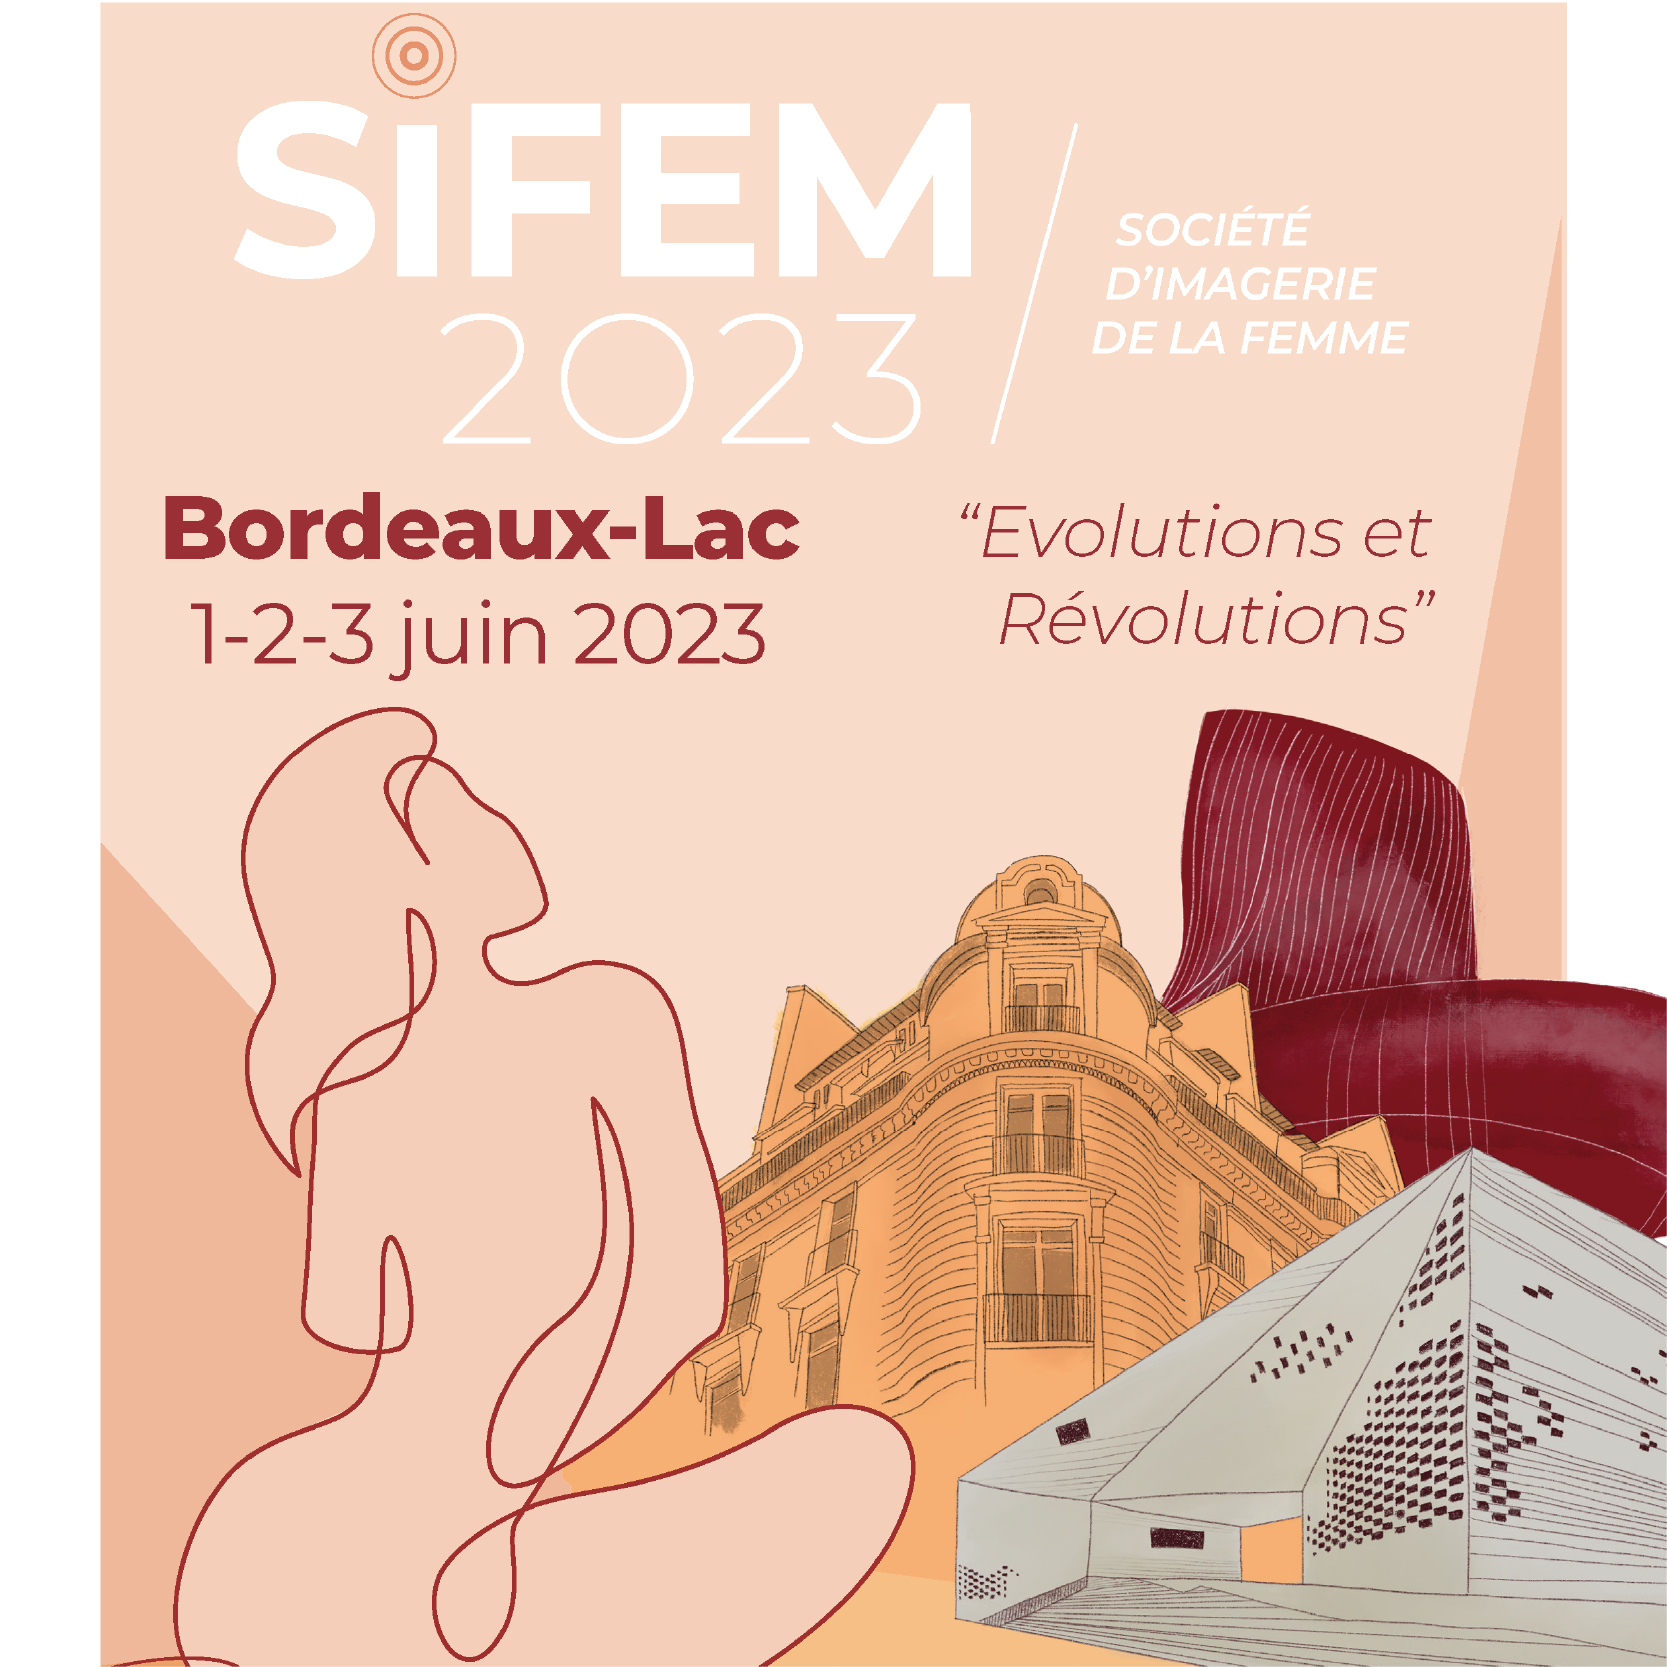 Congrès Societe d'Imagerie de la Femme - SIFEM 2023